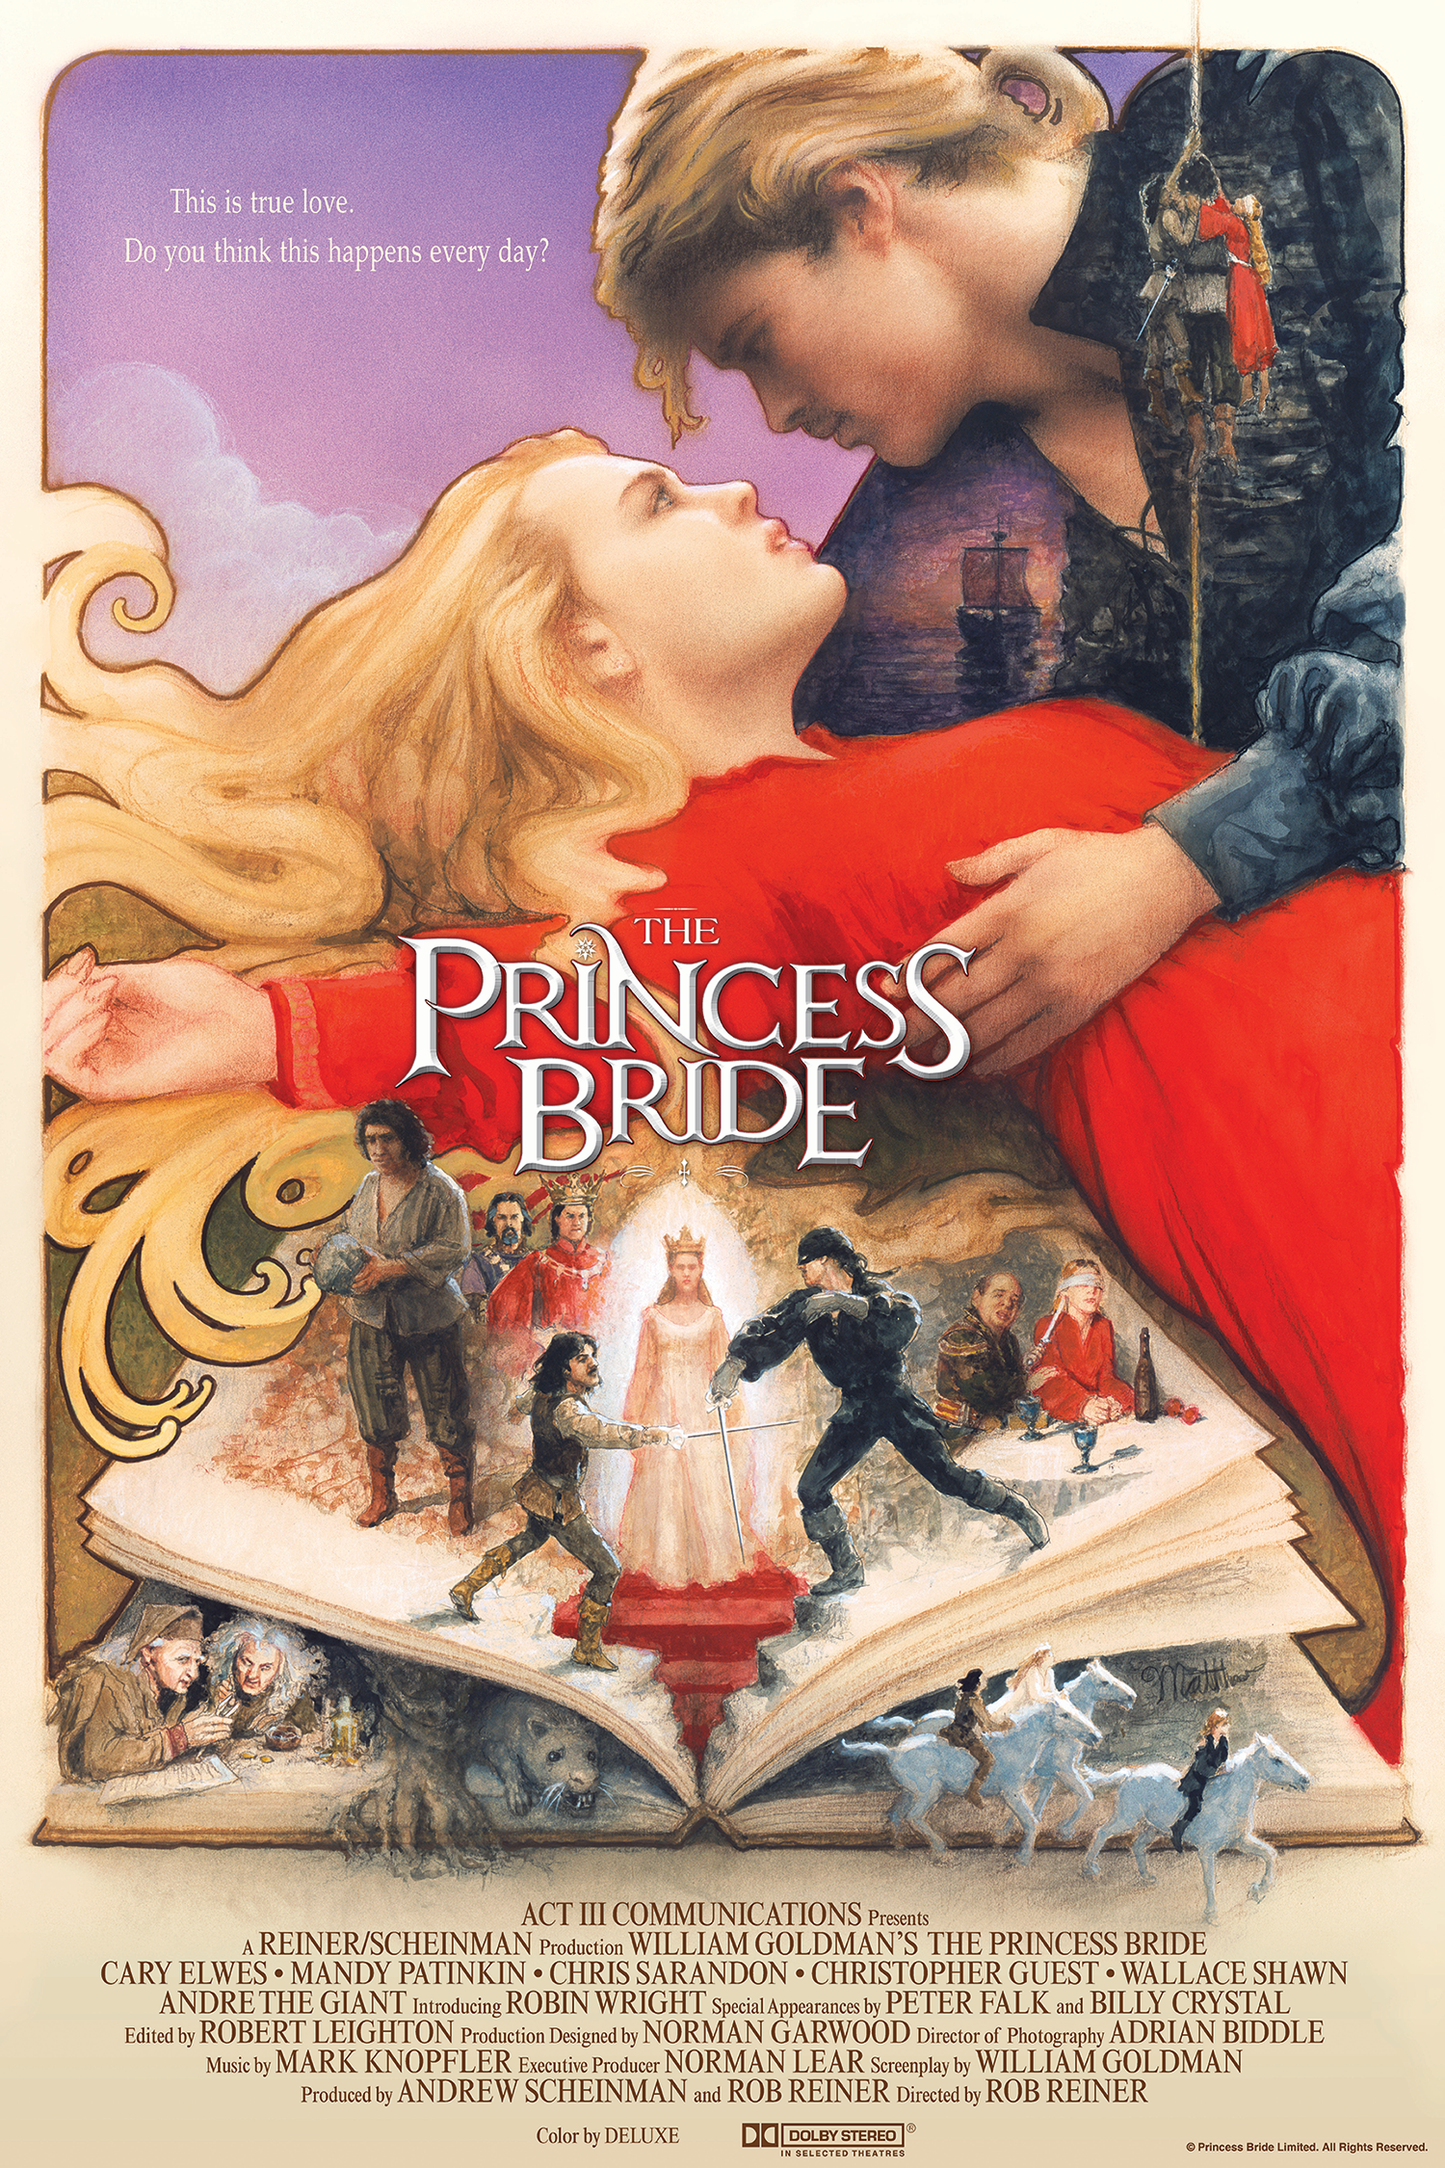 Matthew Peak "The Princess Bride" AP